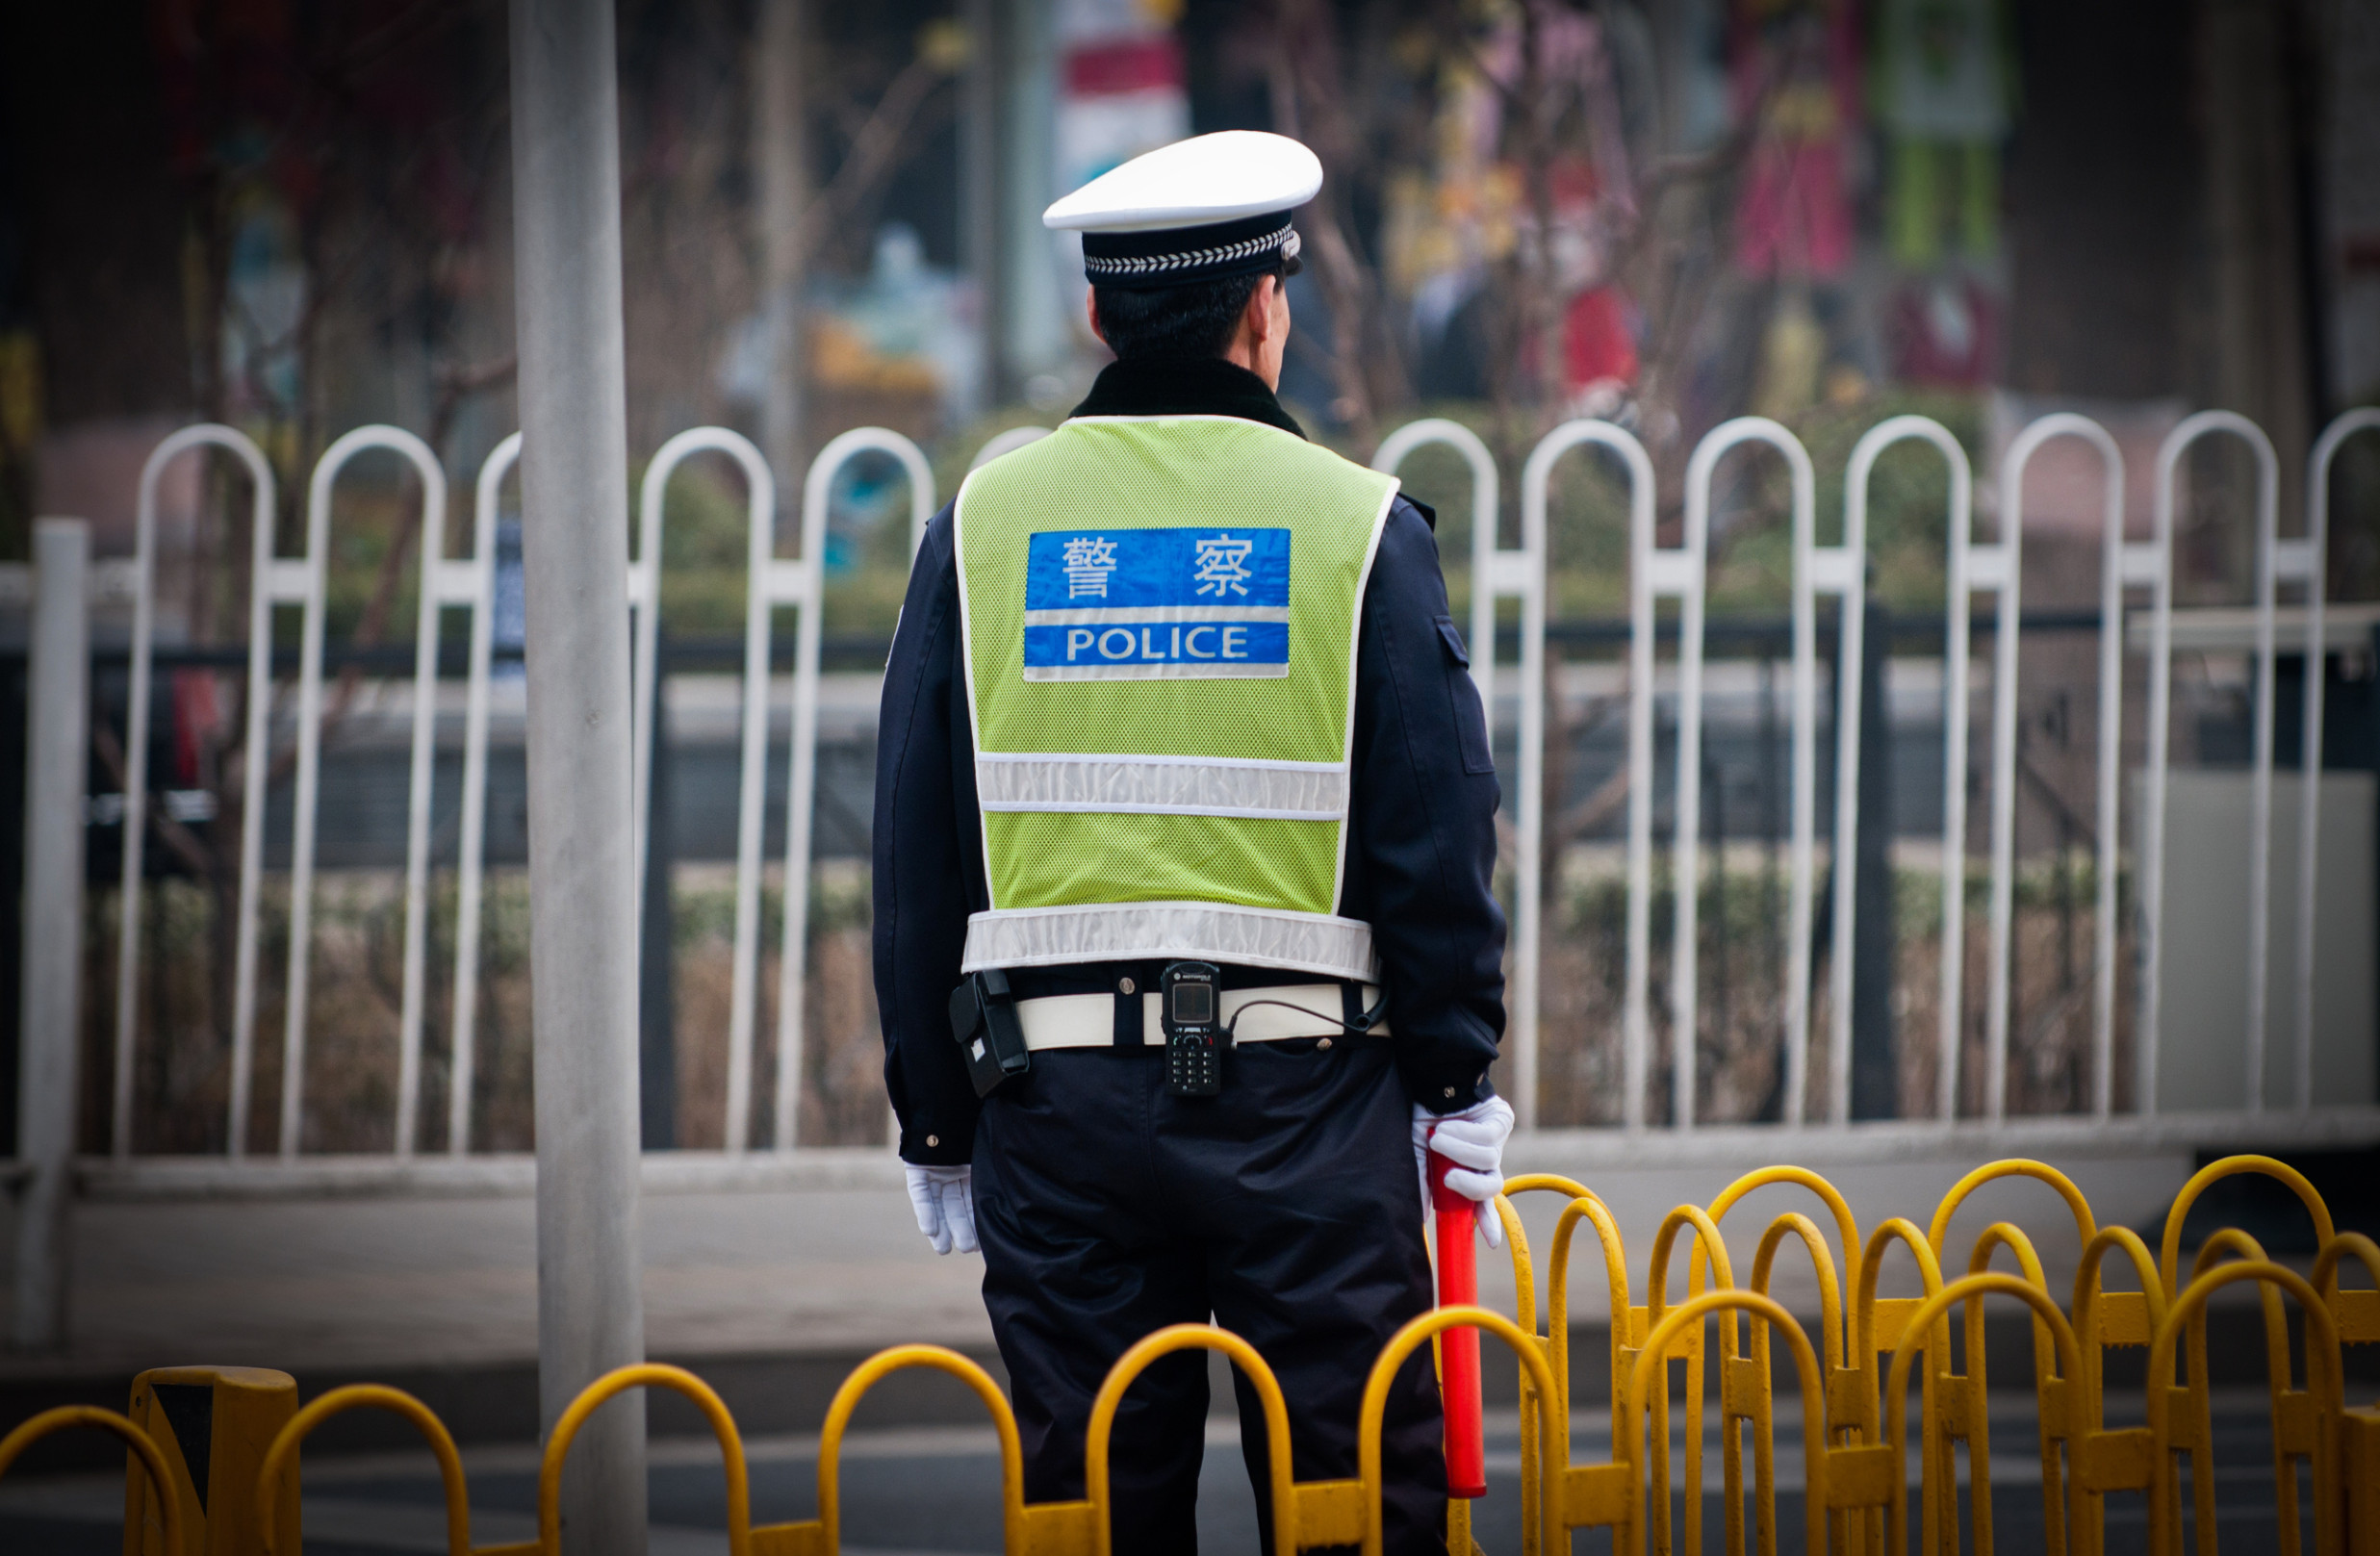 Naše policejní stanice v cizině neexistují, ale uzavřeli jsme je, oznámila Čína